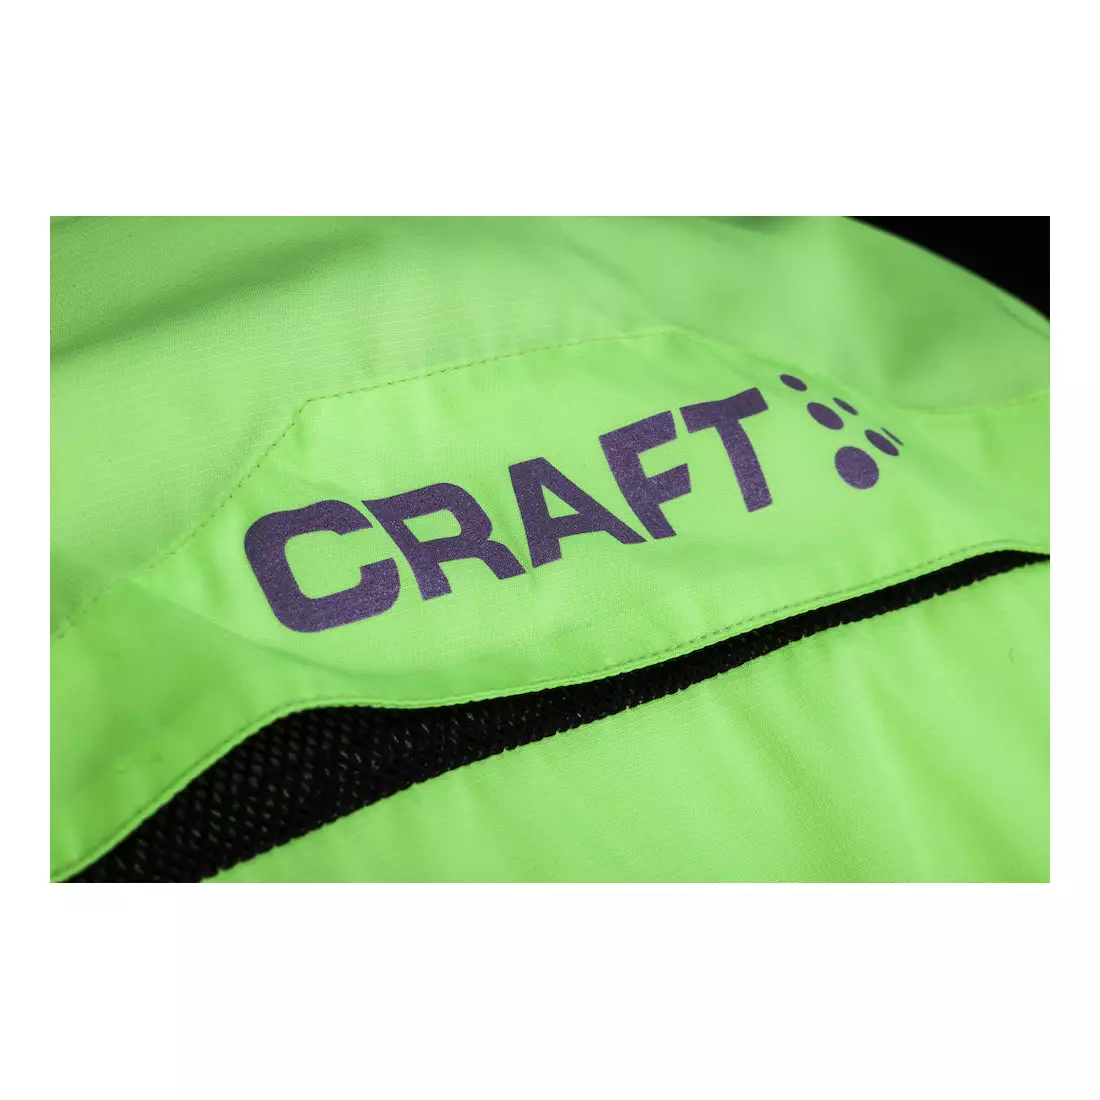 CRAFT MOVE WIND kerékpáros széldzseki kabát 1902014-2810